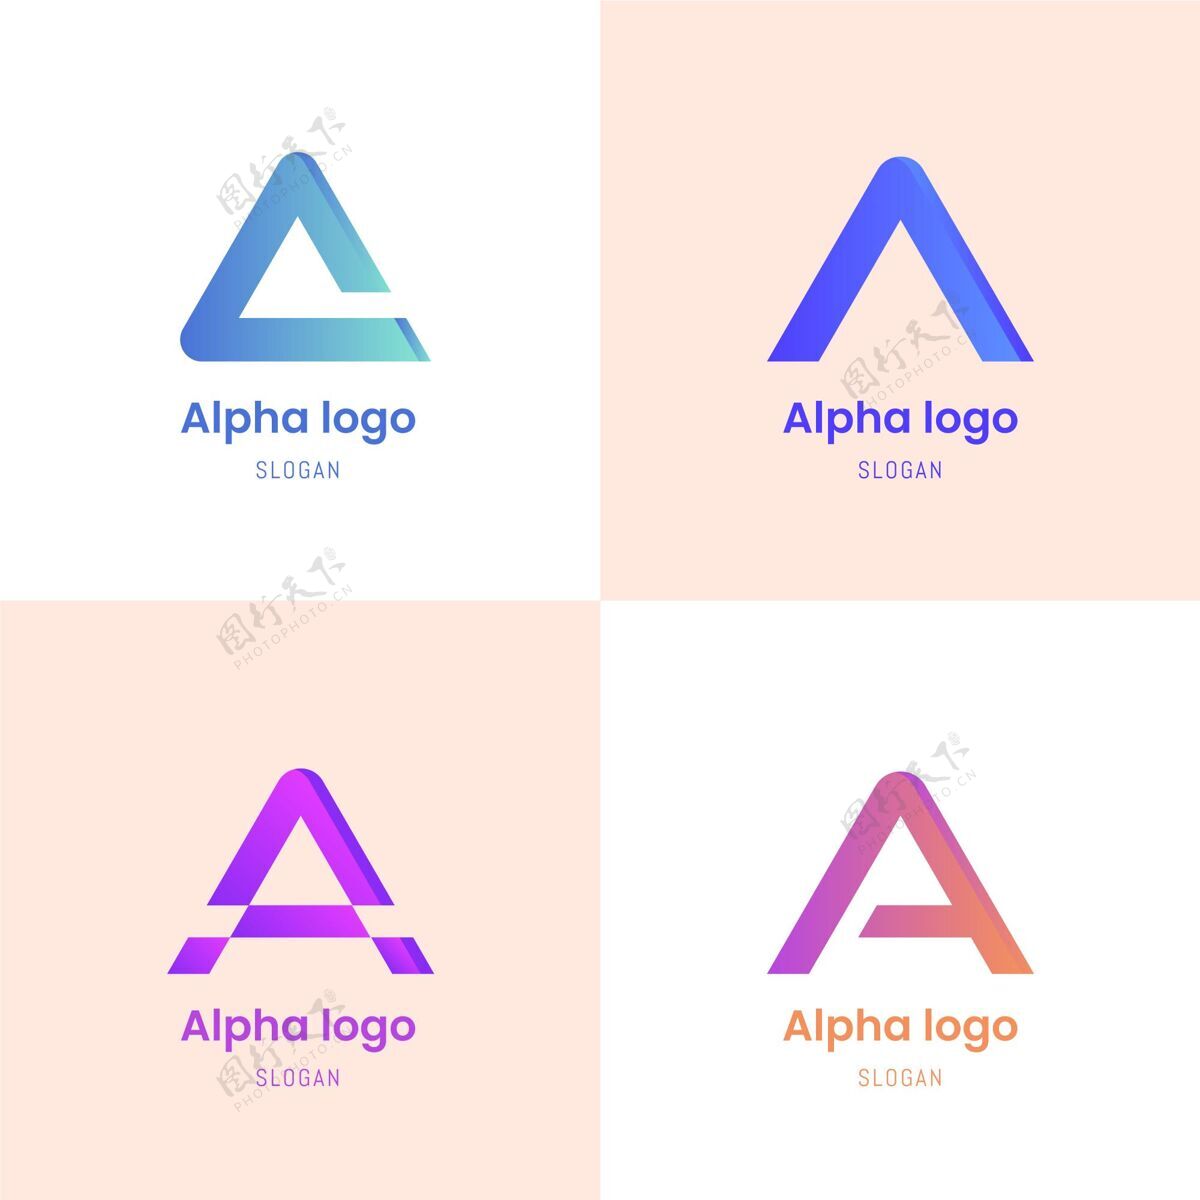 标识平面设计彩色阿尔法标志企业标识品牌品牌